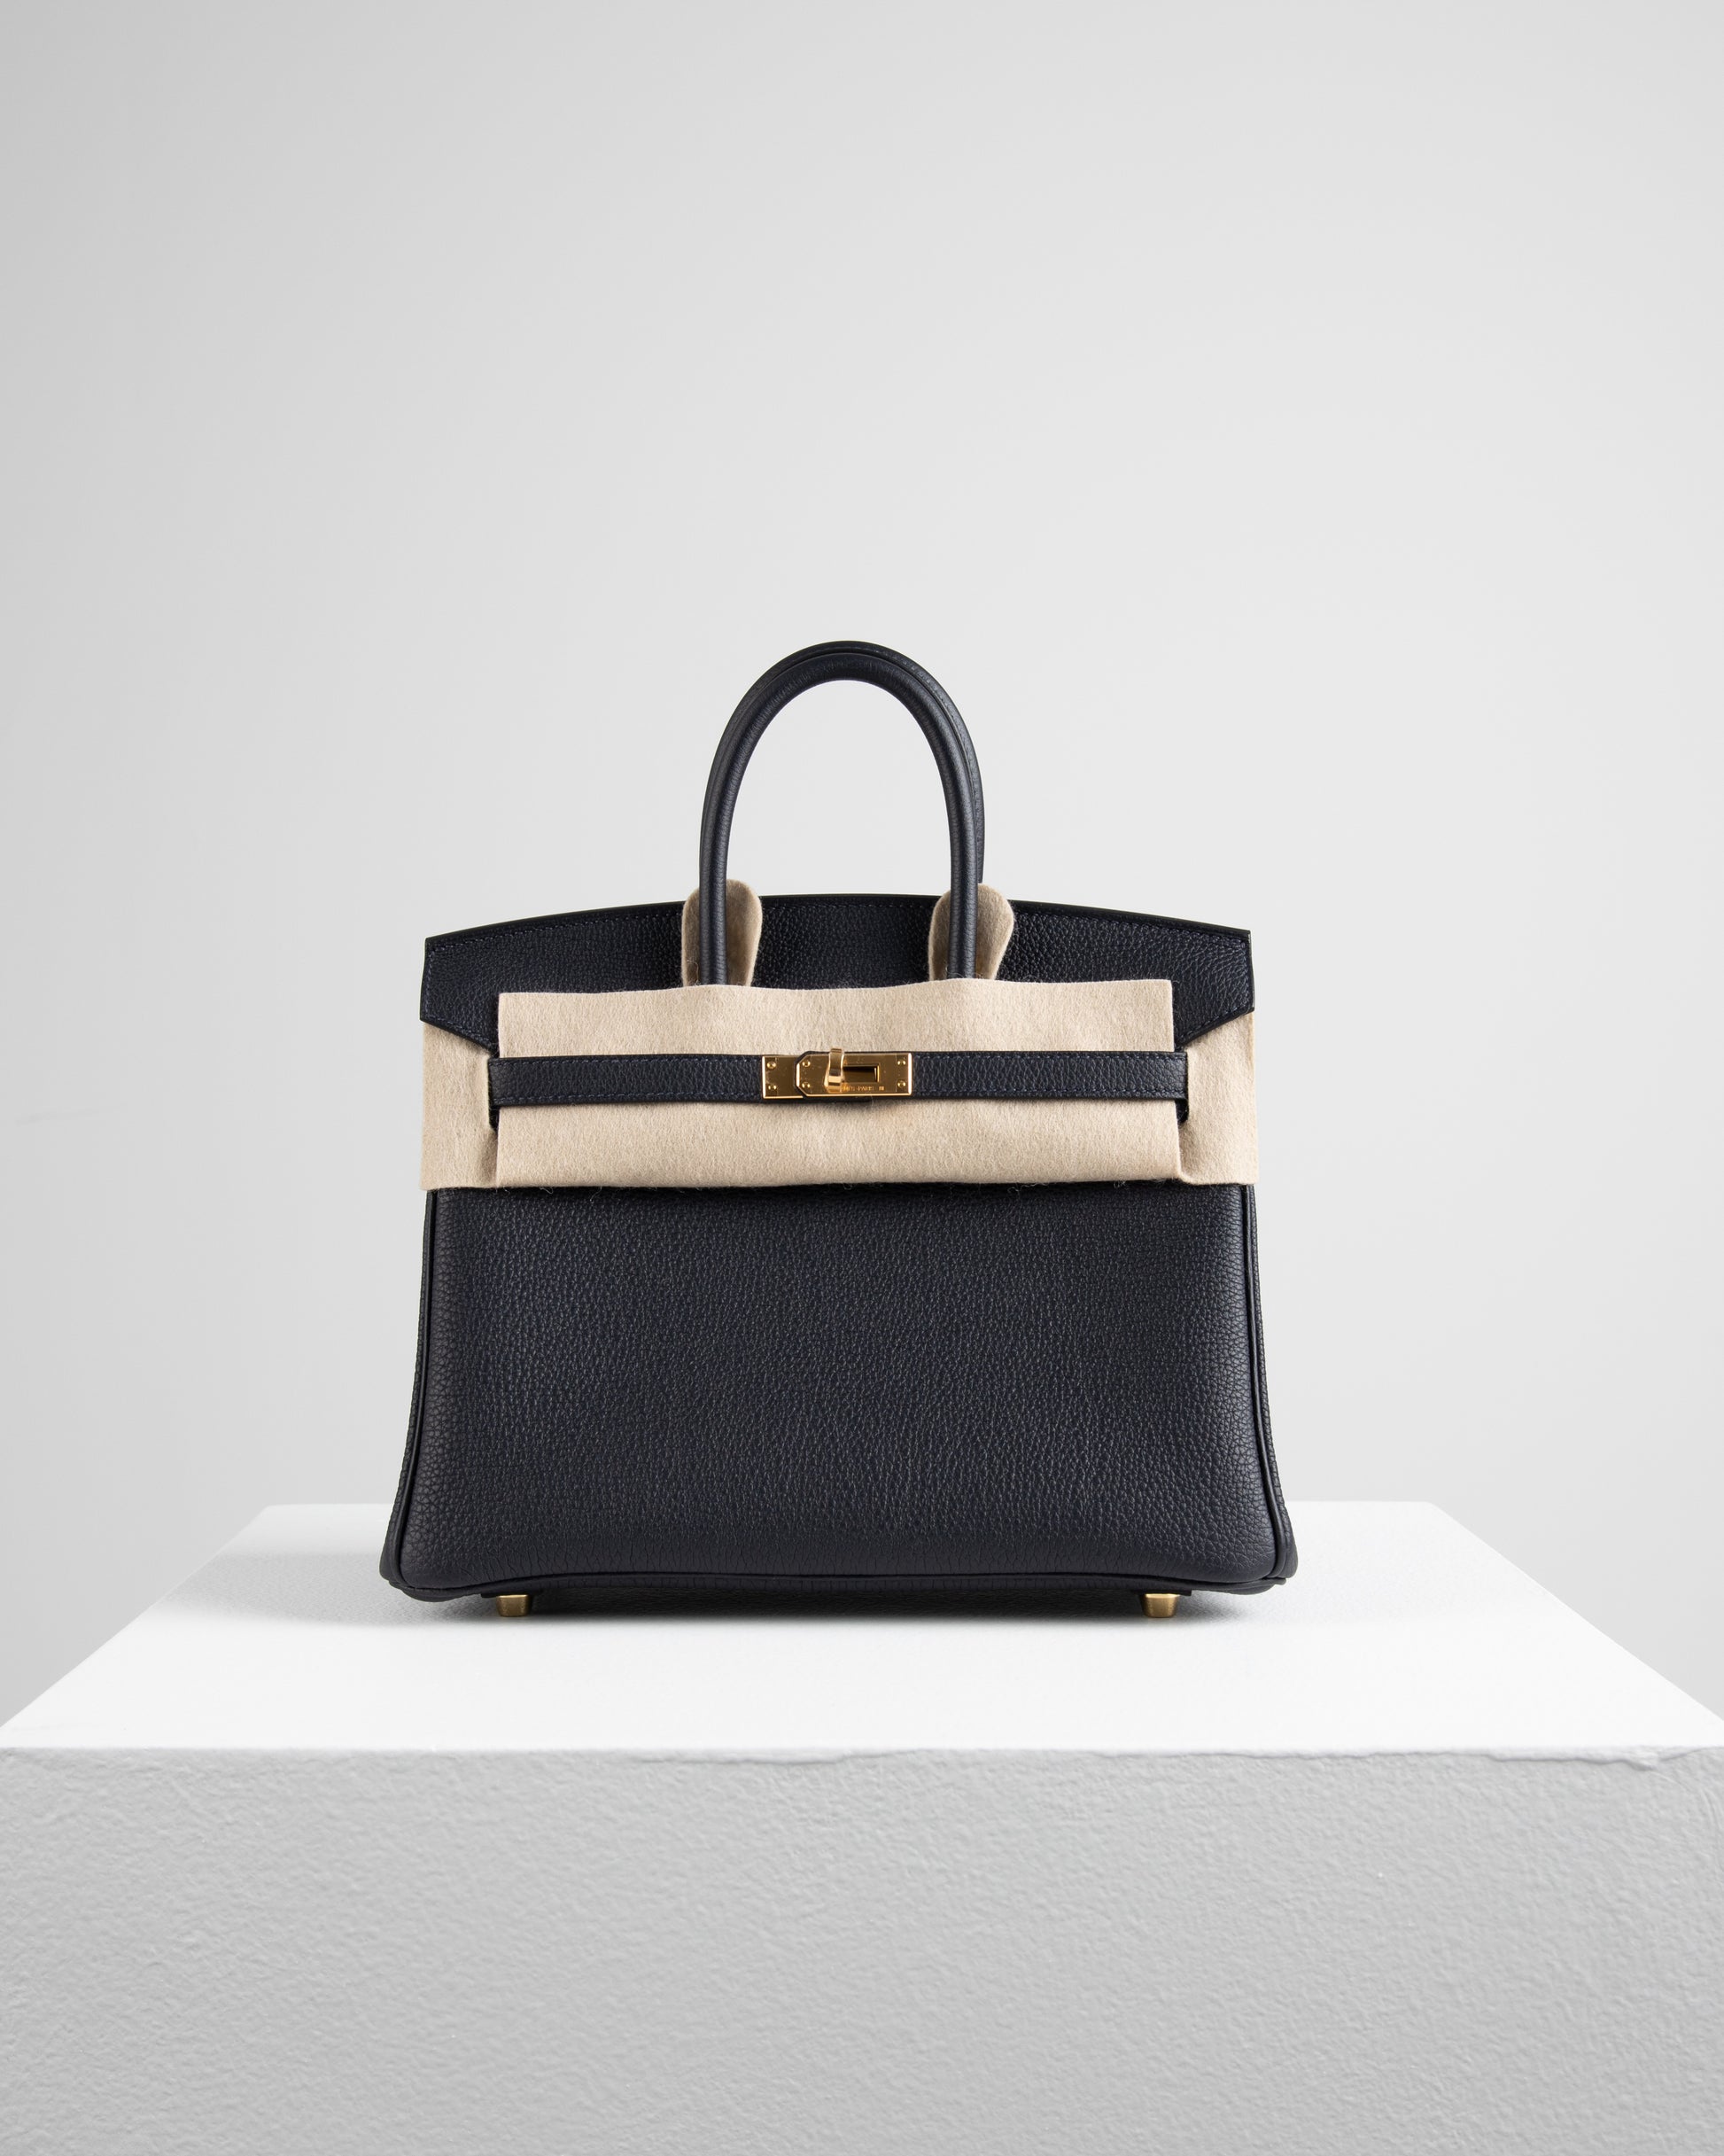 Hermès Birkin 25 Cuivre Togo Leather Gold Hardware - 2016, X